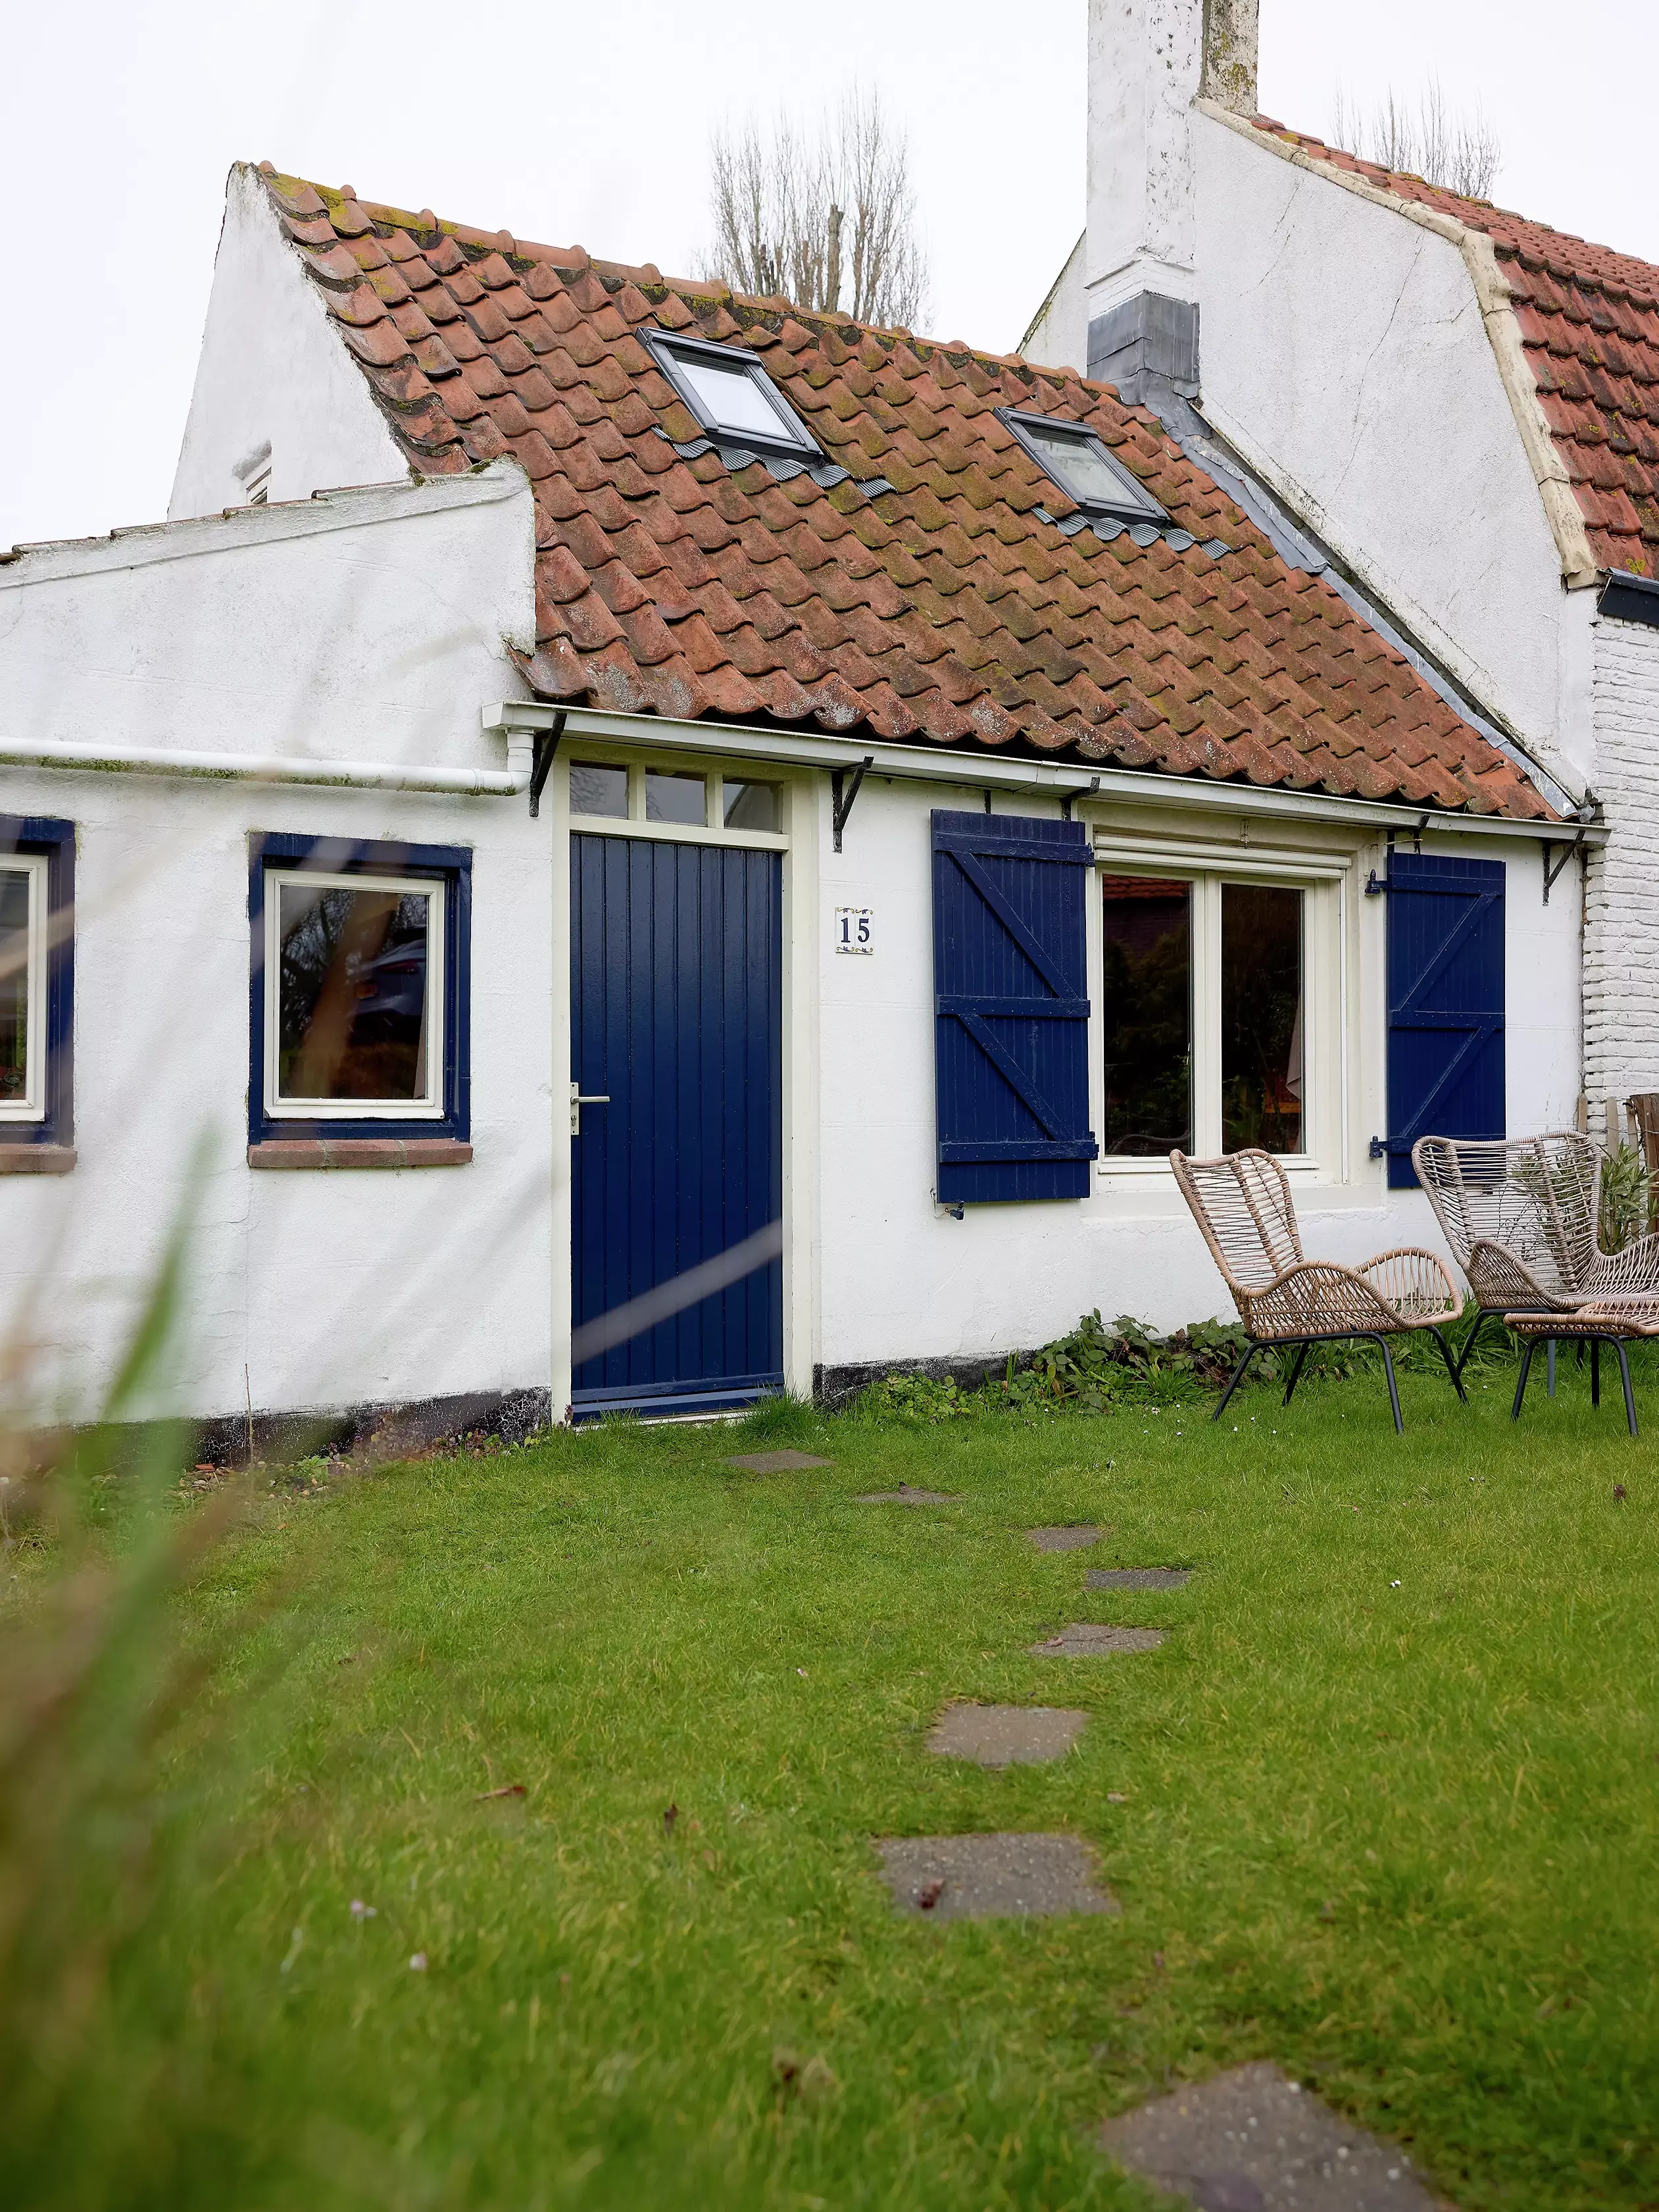 Cottage traditionnel en terrasse avec toit en tuiles rouges et fenêtres VELUX, murs blancs et accents bleus.